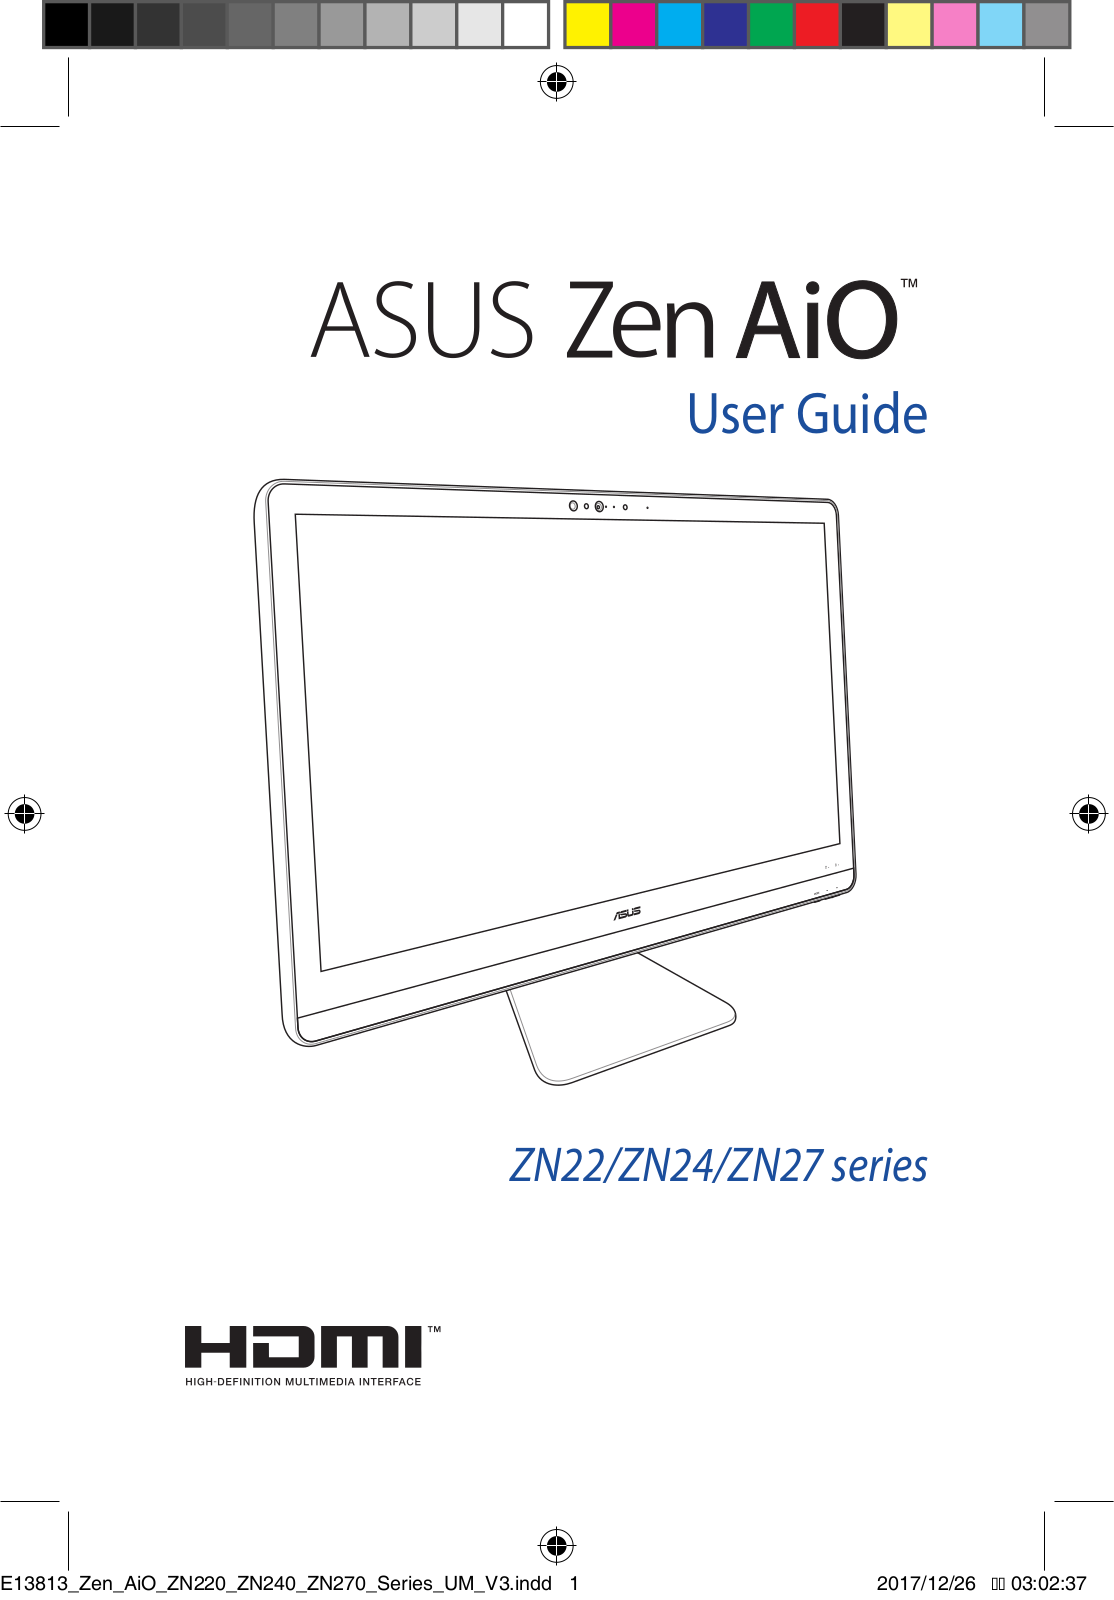 Asus Zen AiO ZN22, Zen AiO ZN27, Zen AiO ZN24 User Manual